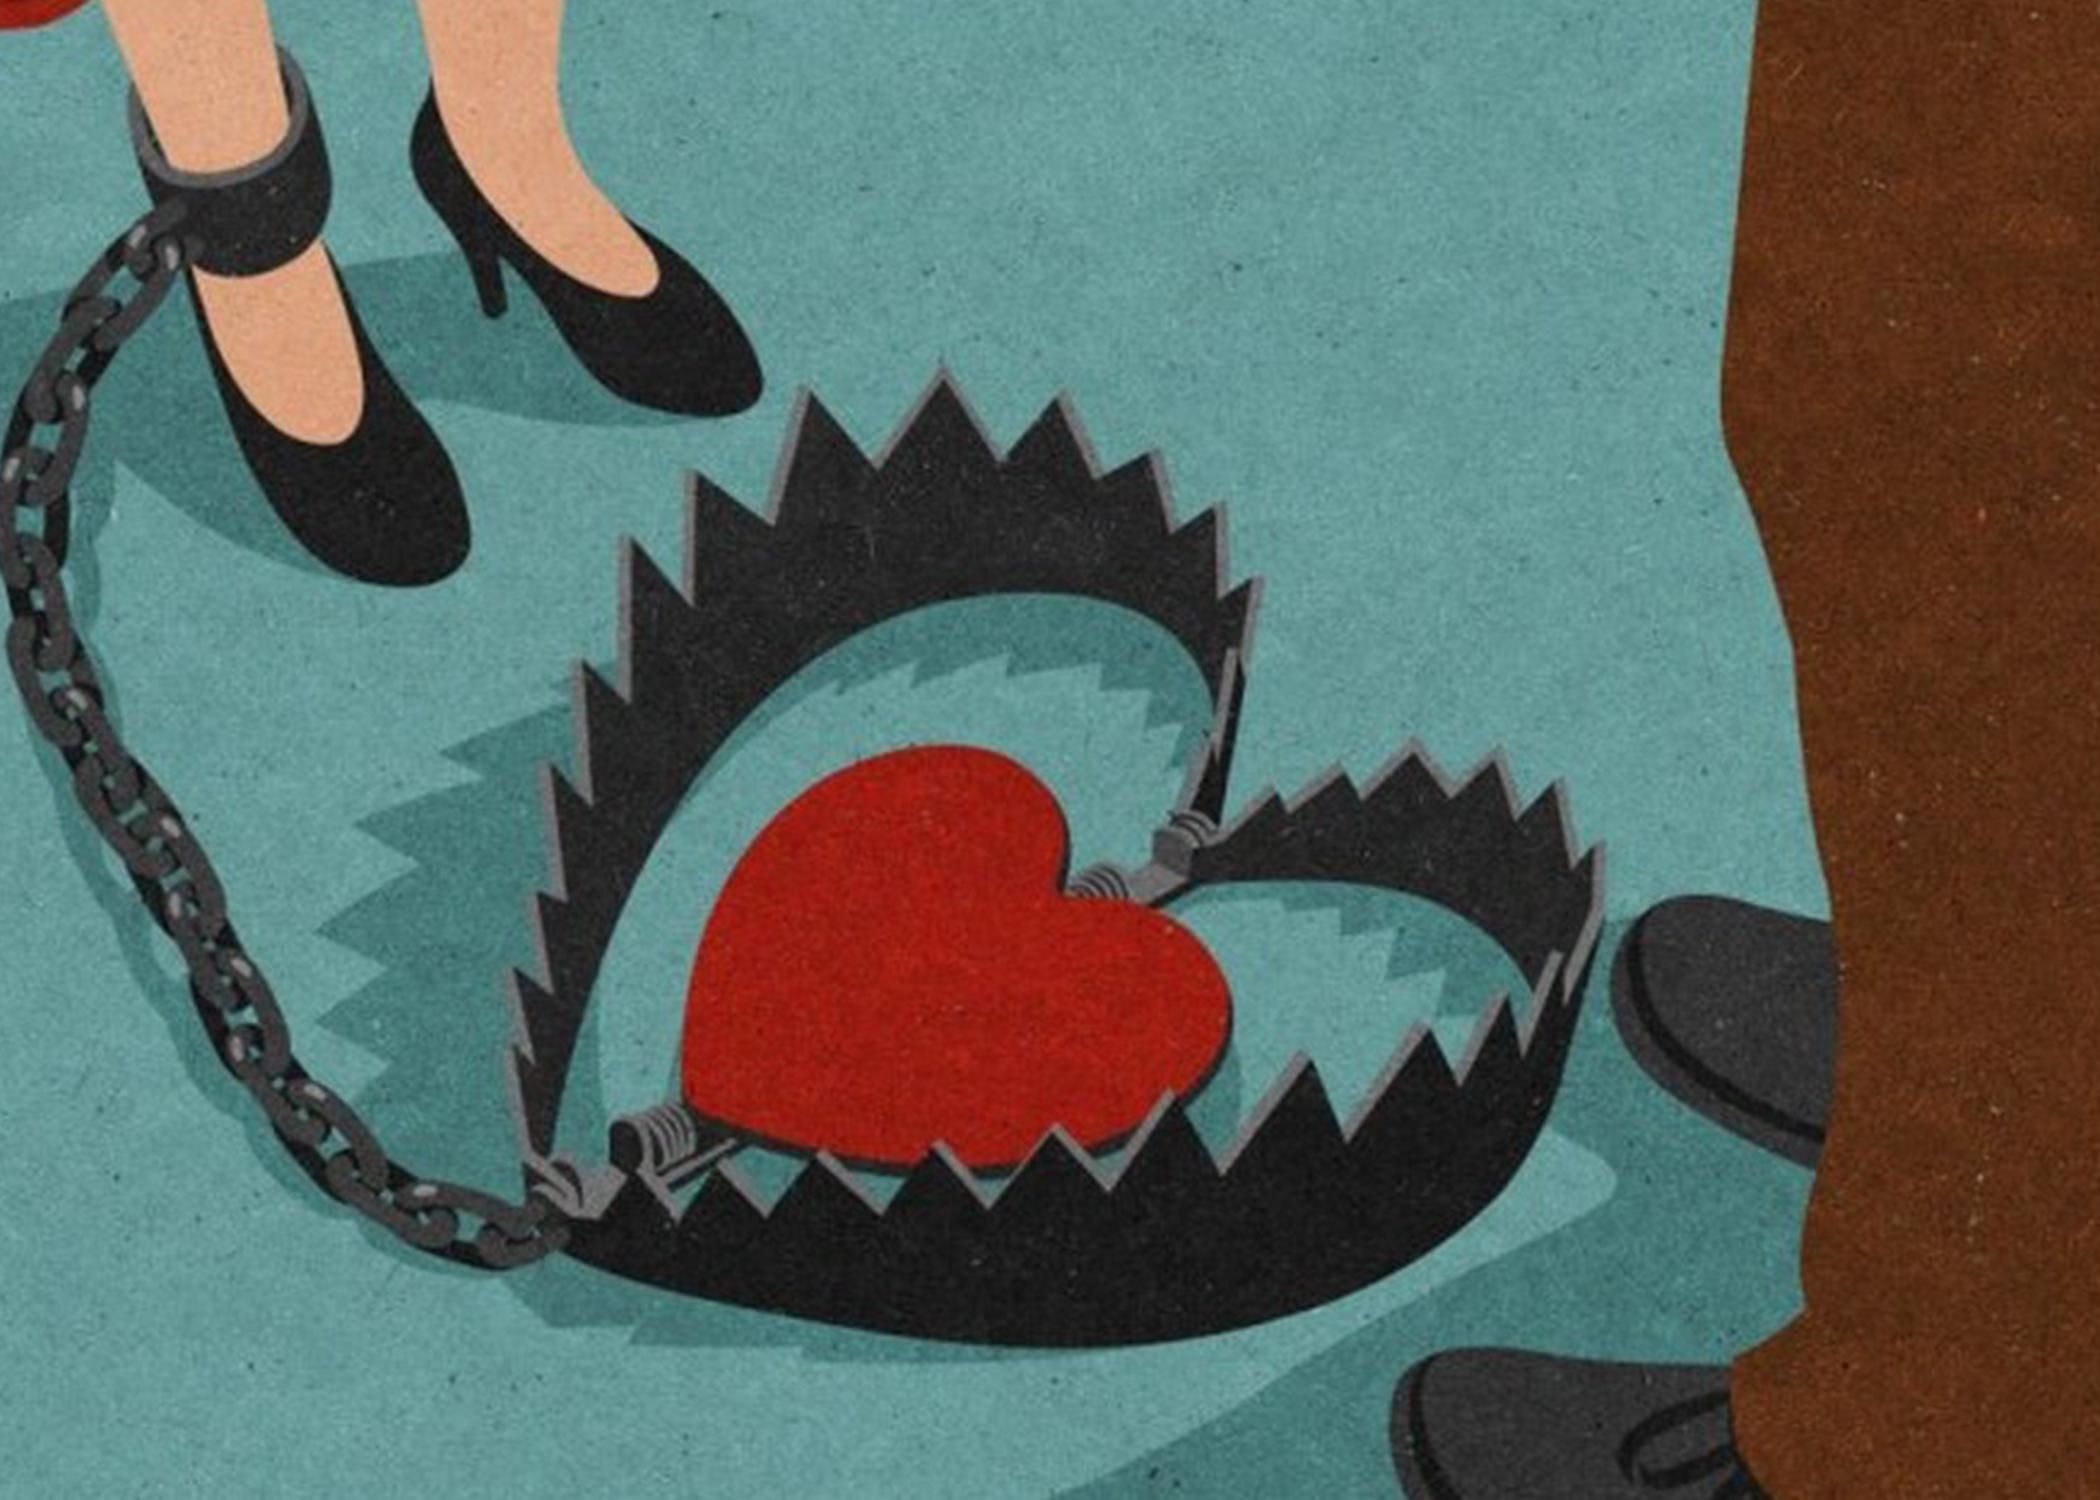 Як люди потрапляють в залежні стосунки: відповідь психолога